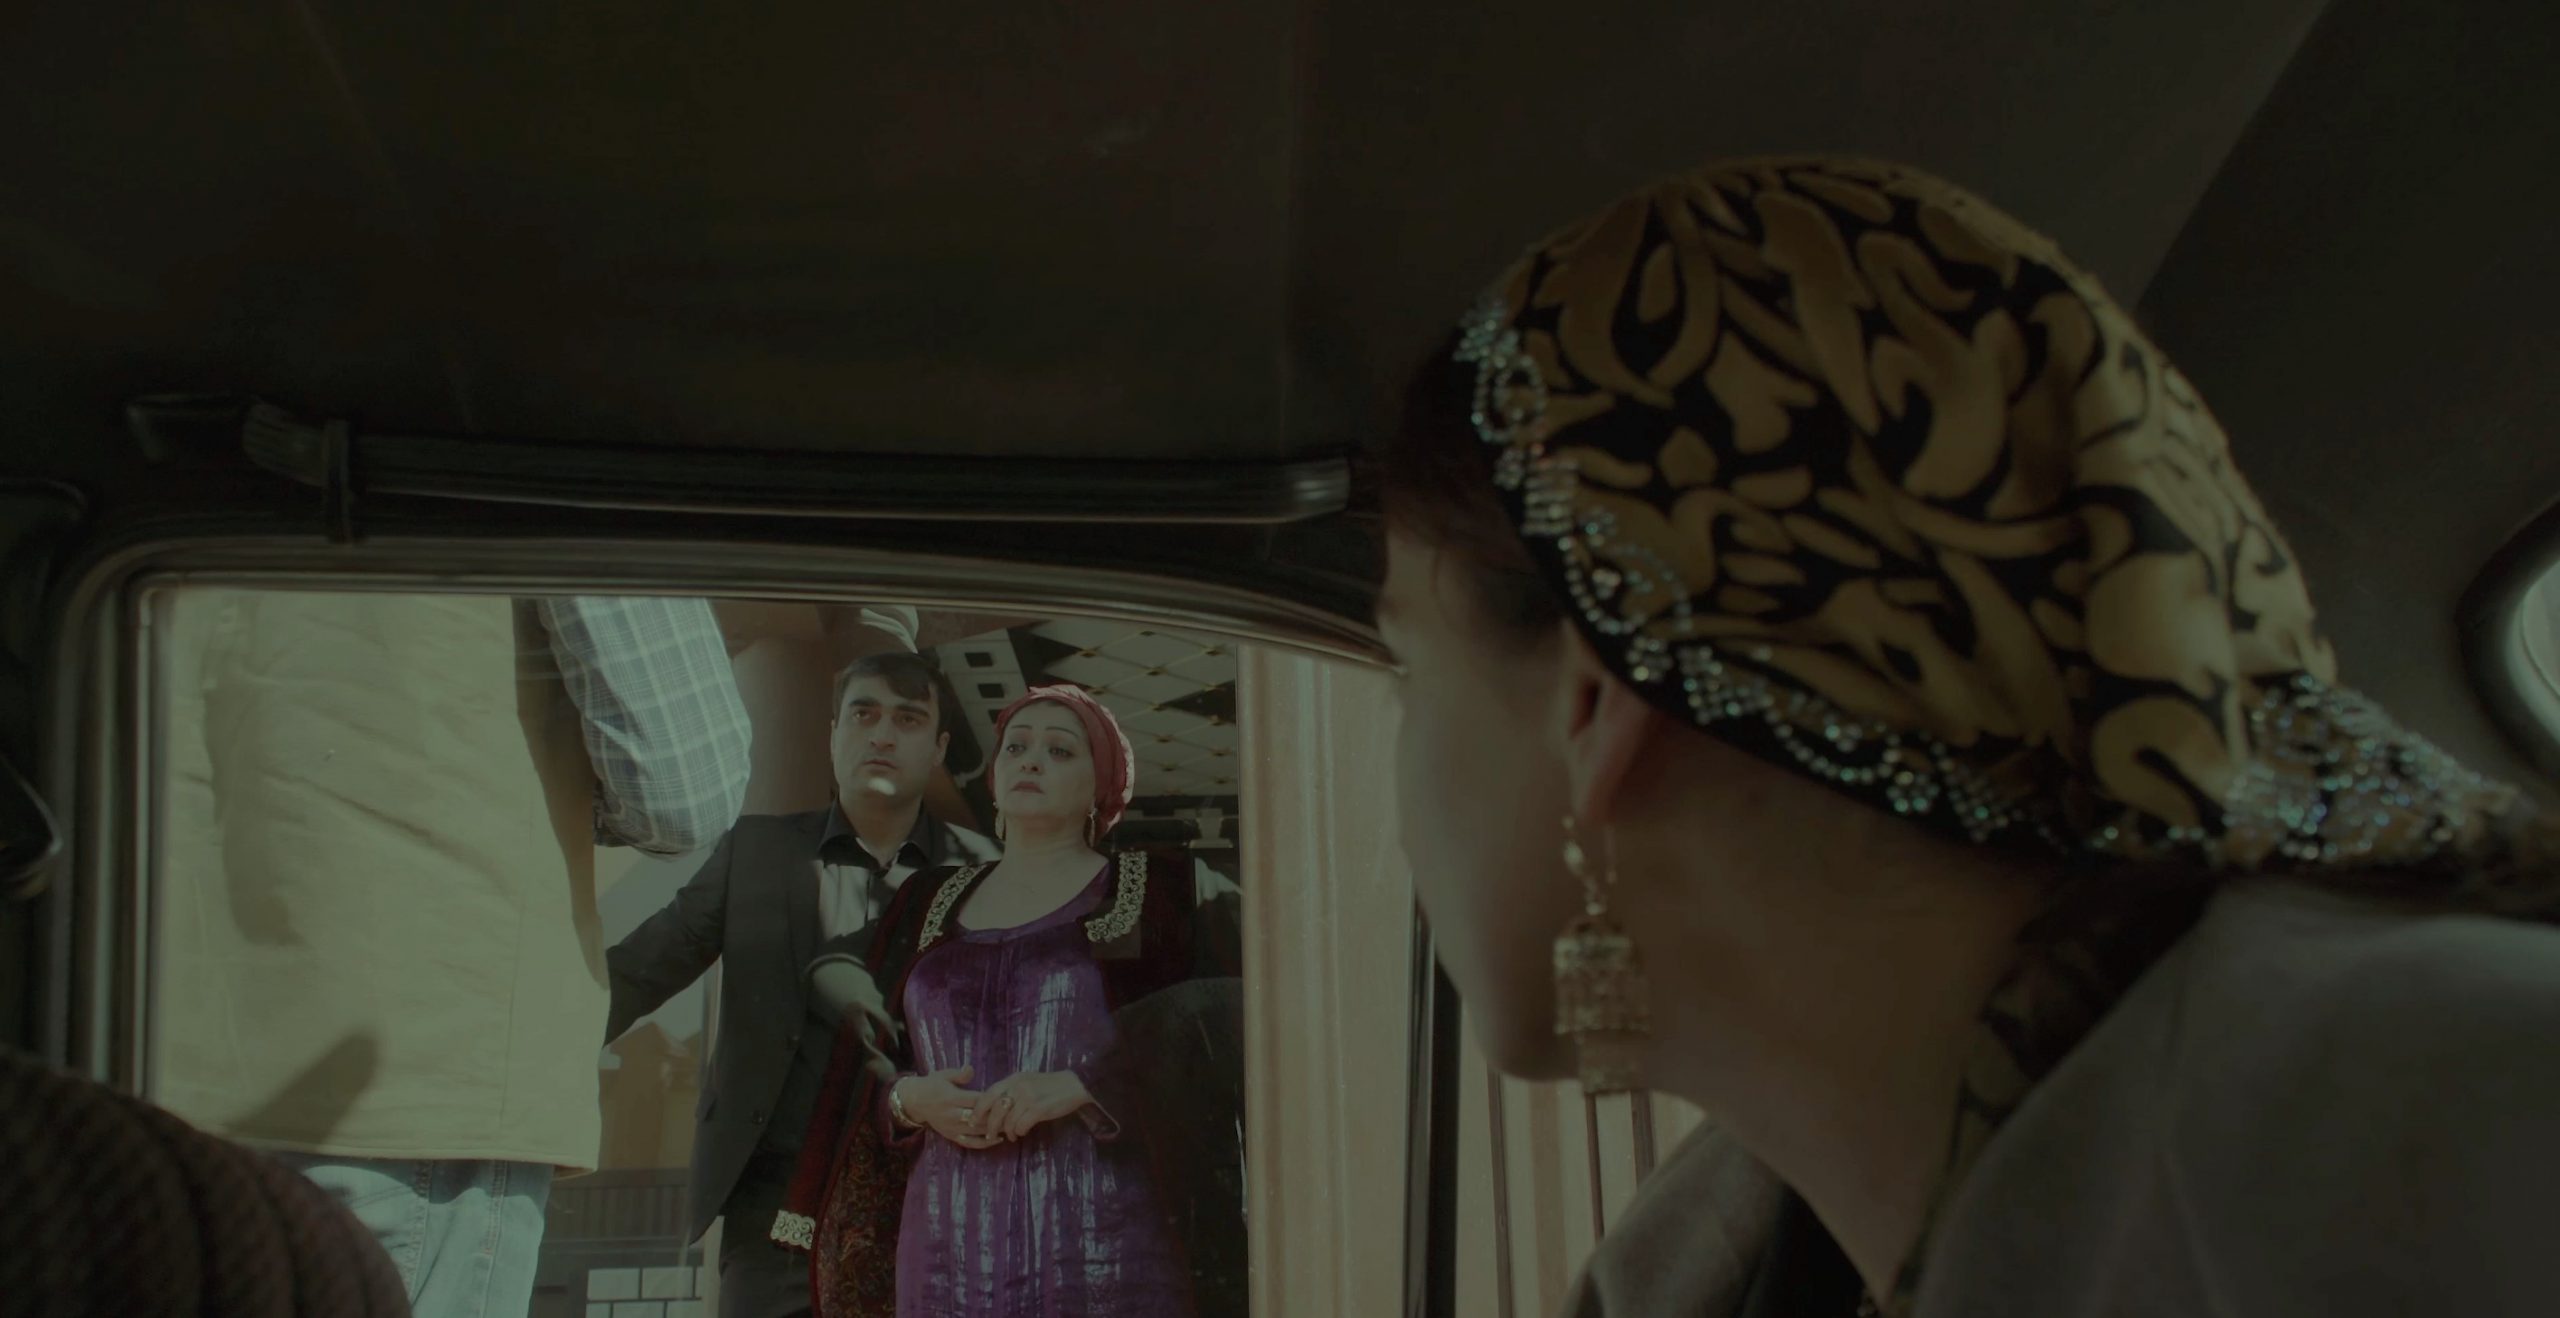 Сркиншот с фильма "Обуза" Таджикистан. История одной женщины